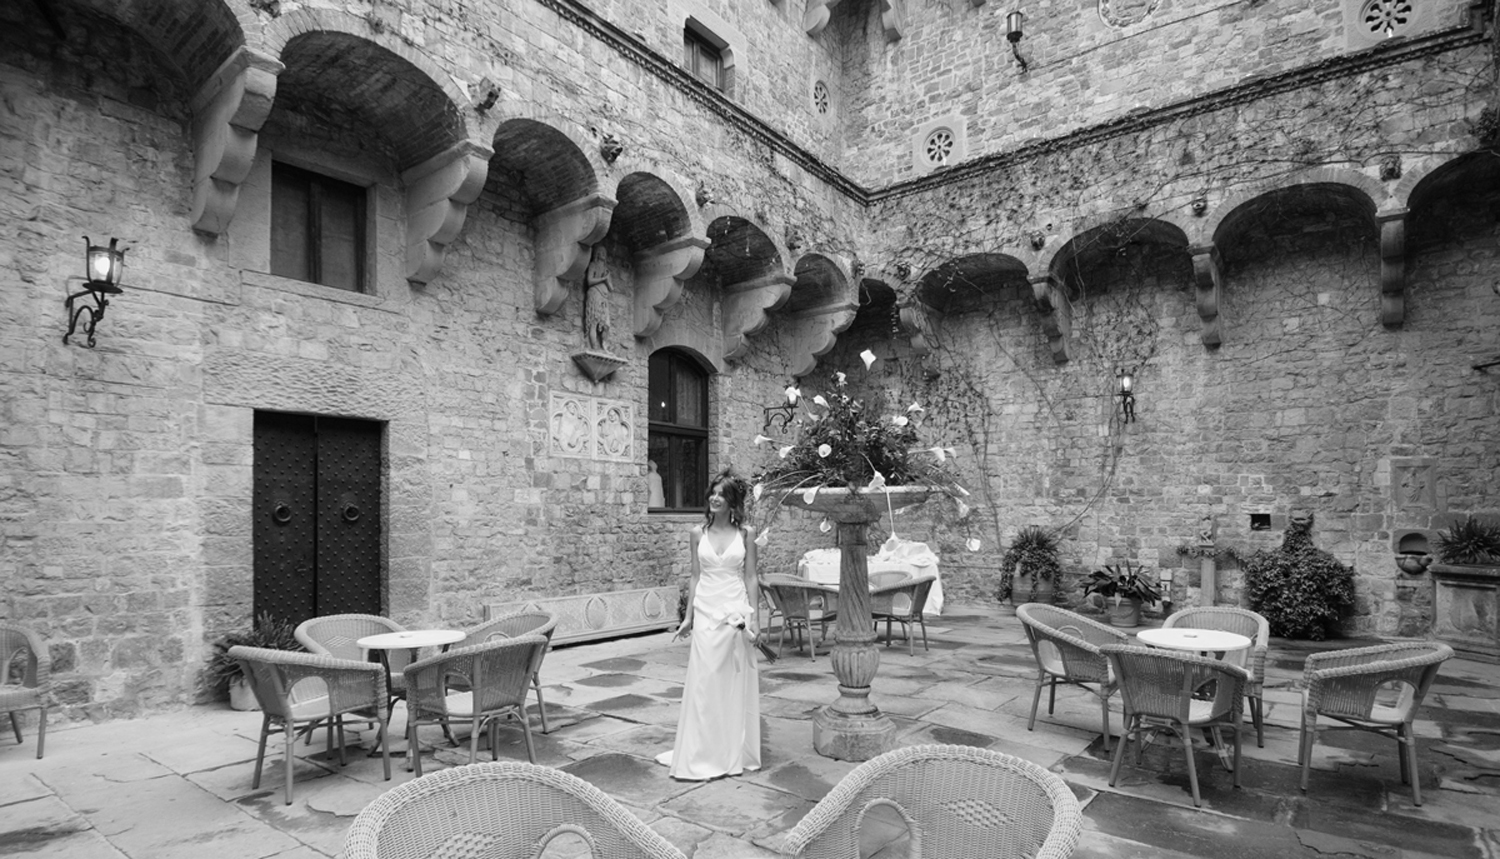 Location Castello di Vincigliata - Fiesole